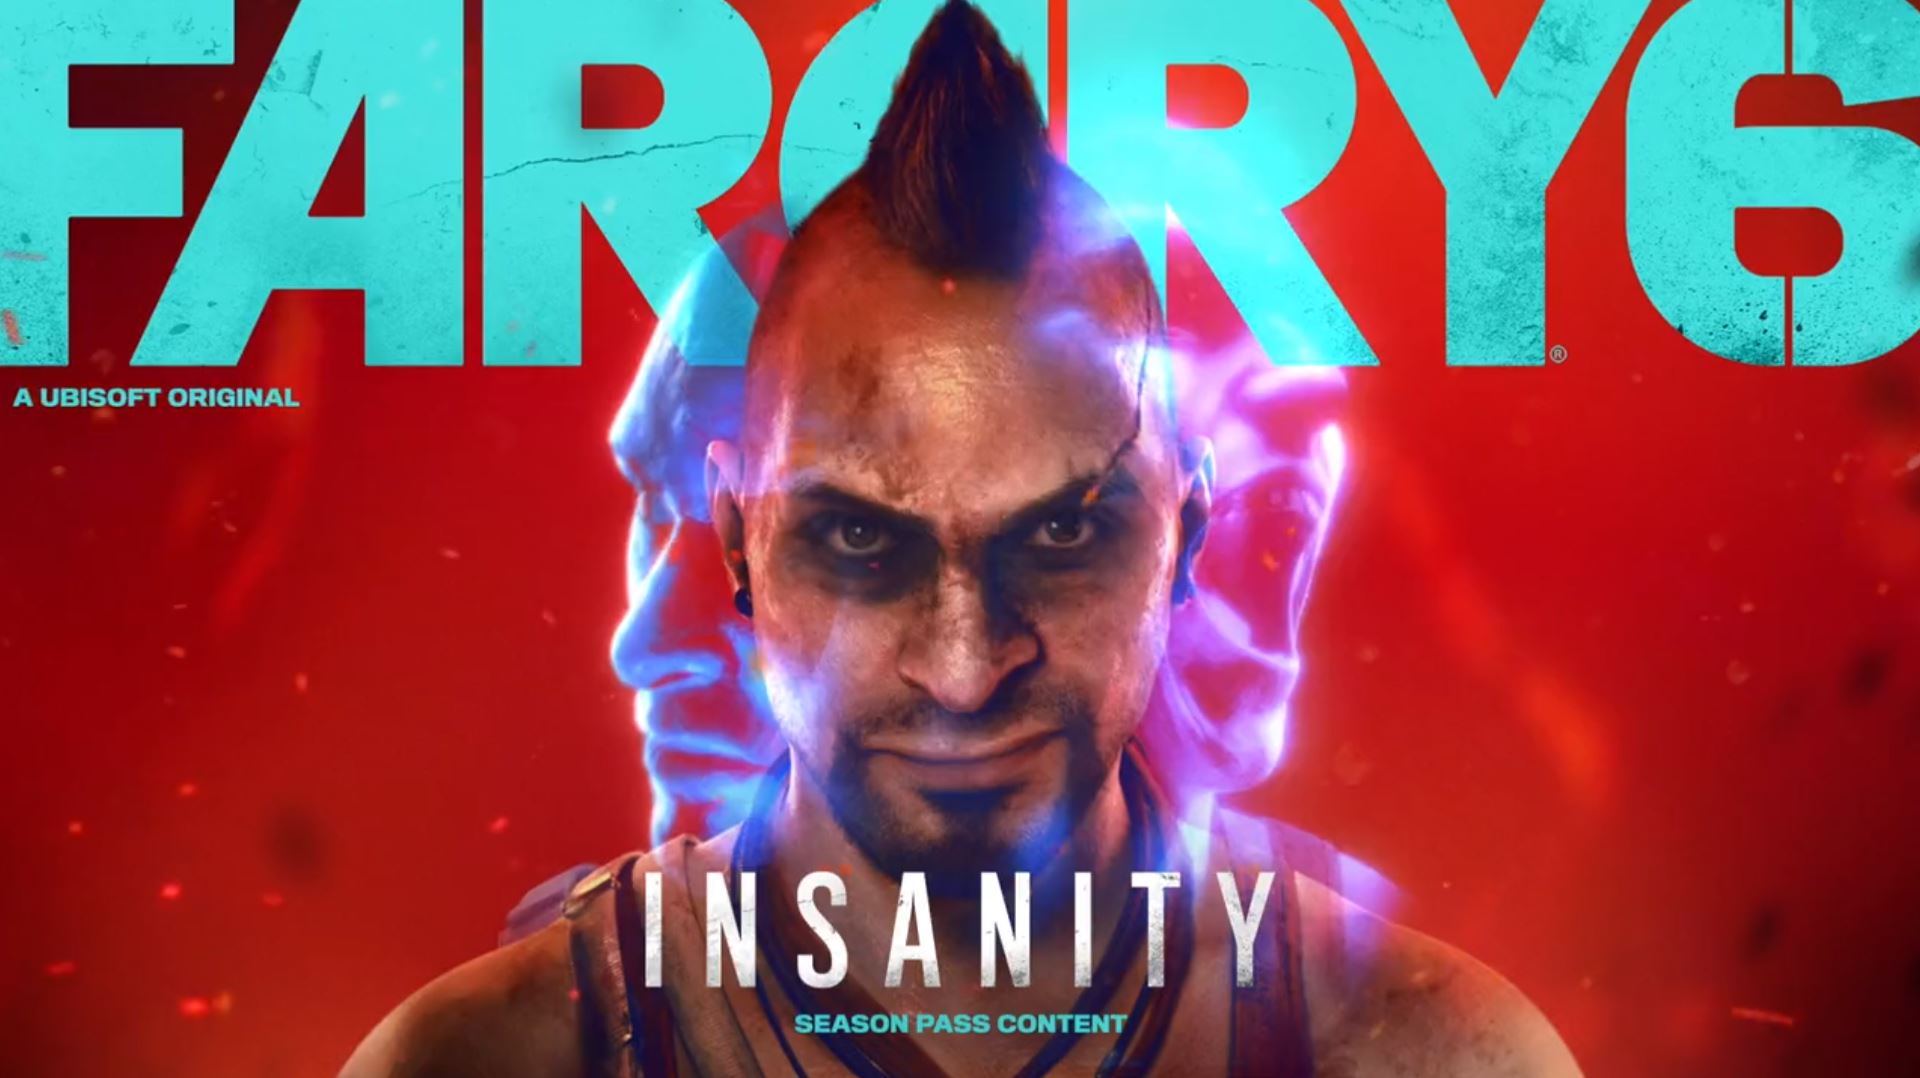 "Insanity" DLC ของ Far Cry 6 ที่ให้ผู้เล่นได้รับบทเป็น Vaas ตัวร้ายจากภาค 3 พร้อมให้เล่น 16 พฤศจิกายนนี้